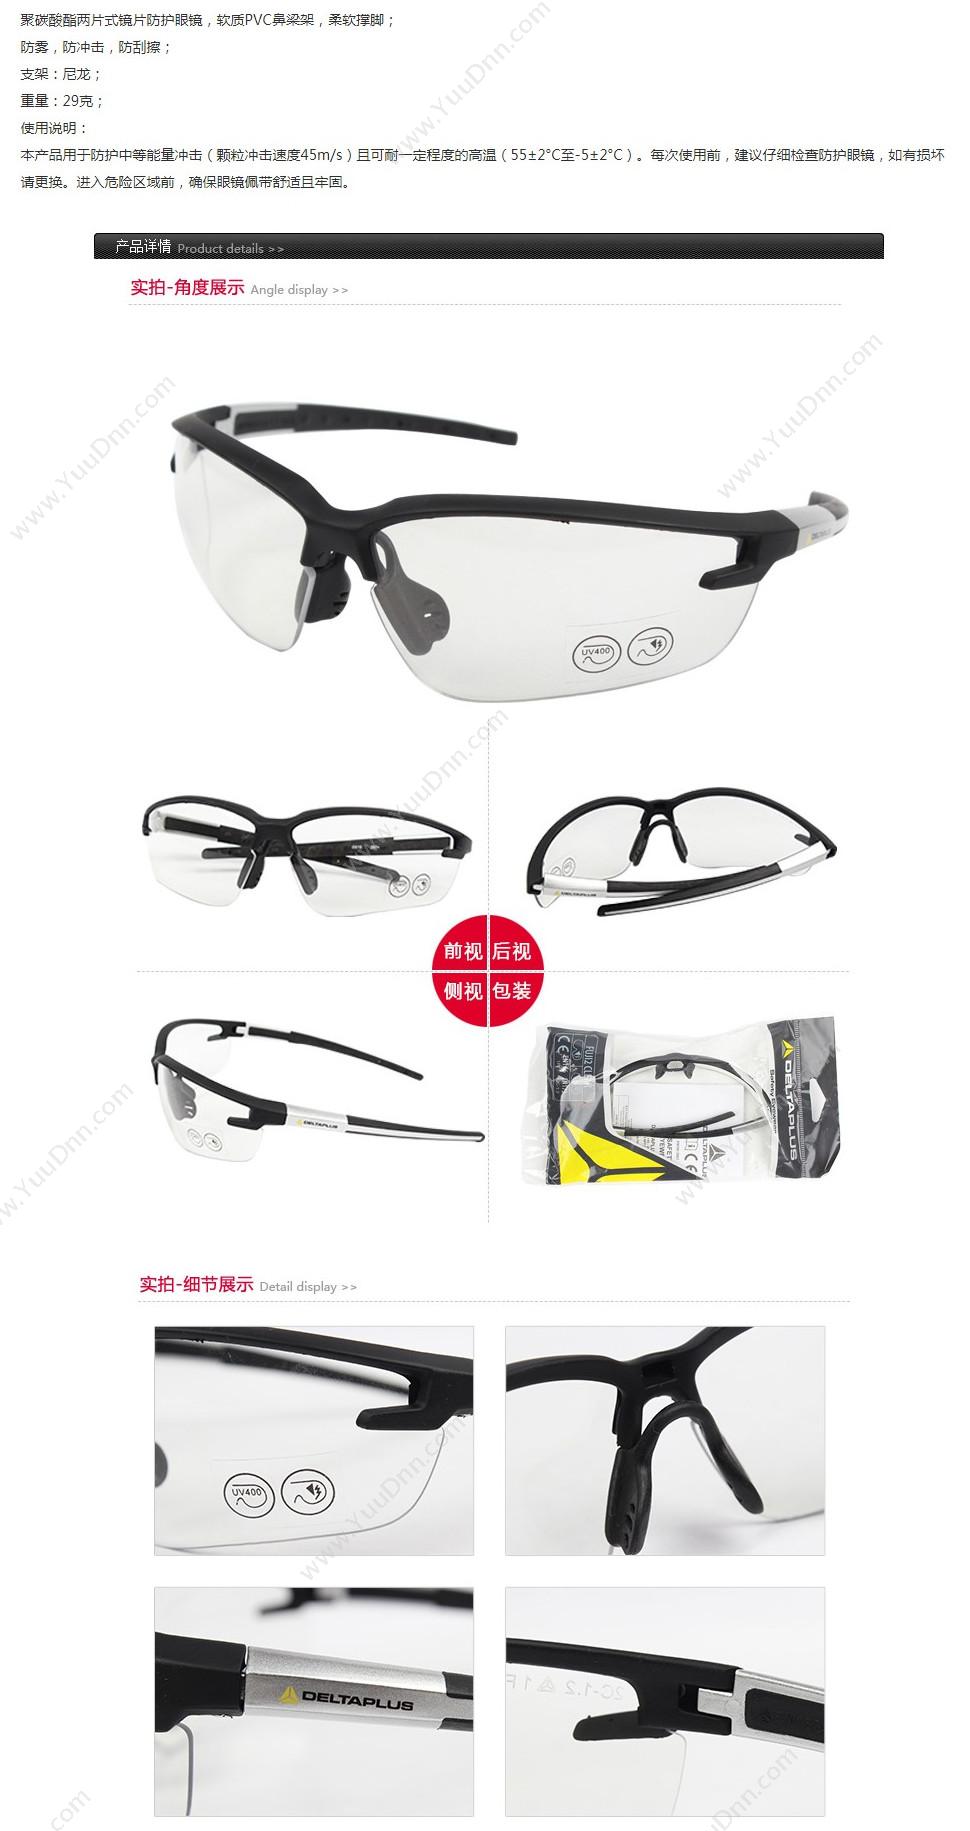 代尔塔 Delta 101136 运动织带调节安全眼镜 PACAYA STRAP 透明白色 10个/盒 防雾 防护眼镜